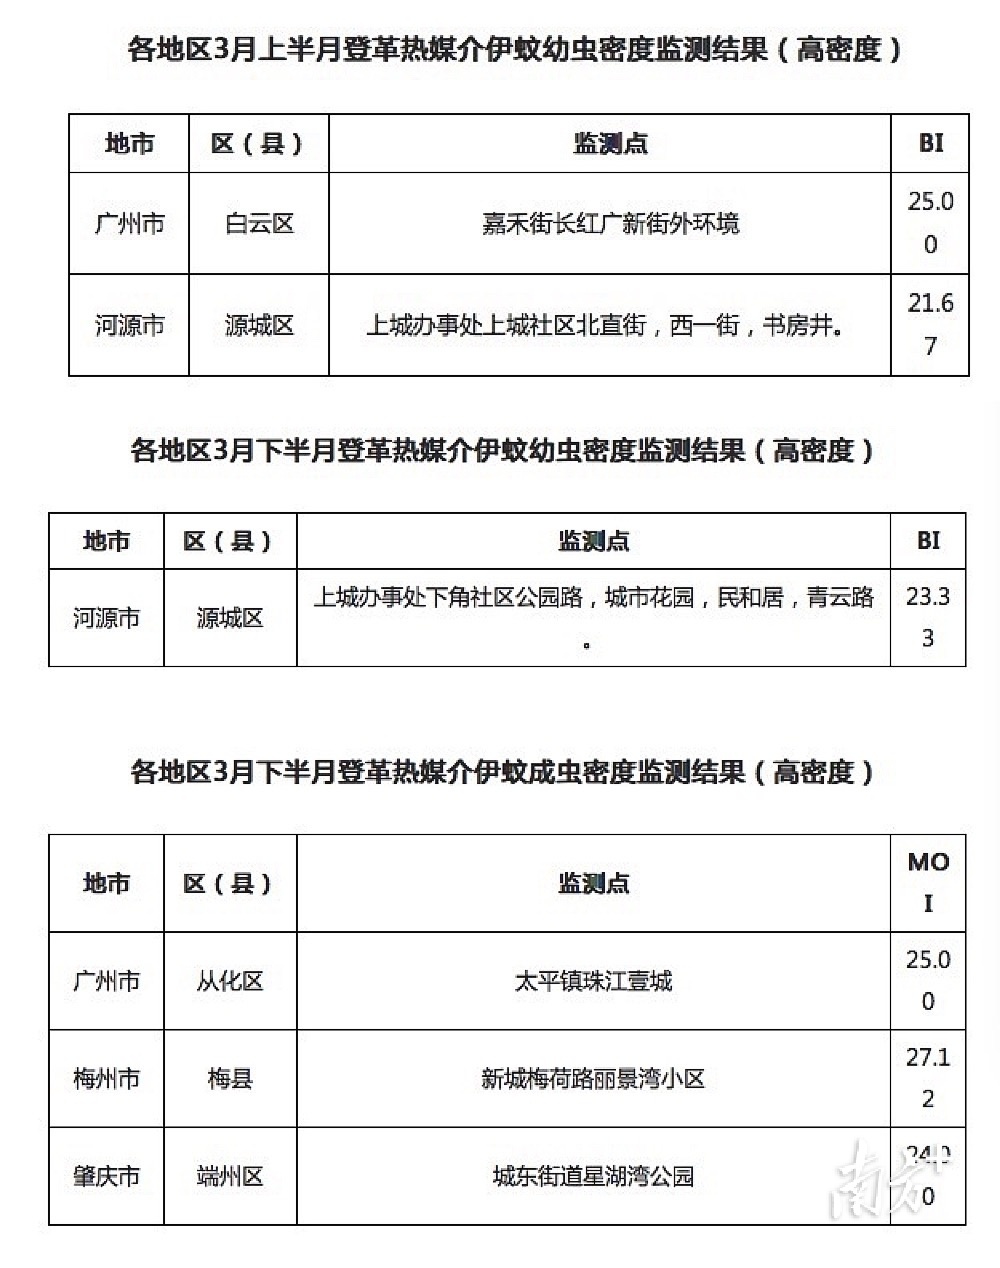 广东省3月登革热媒介伊蚊幼虫密度检测结果。